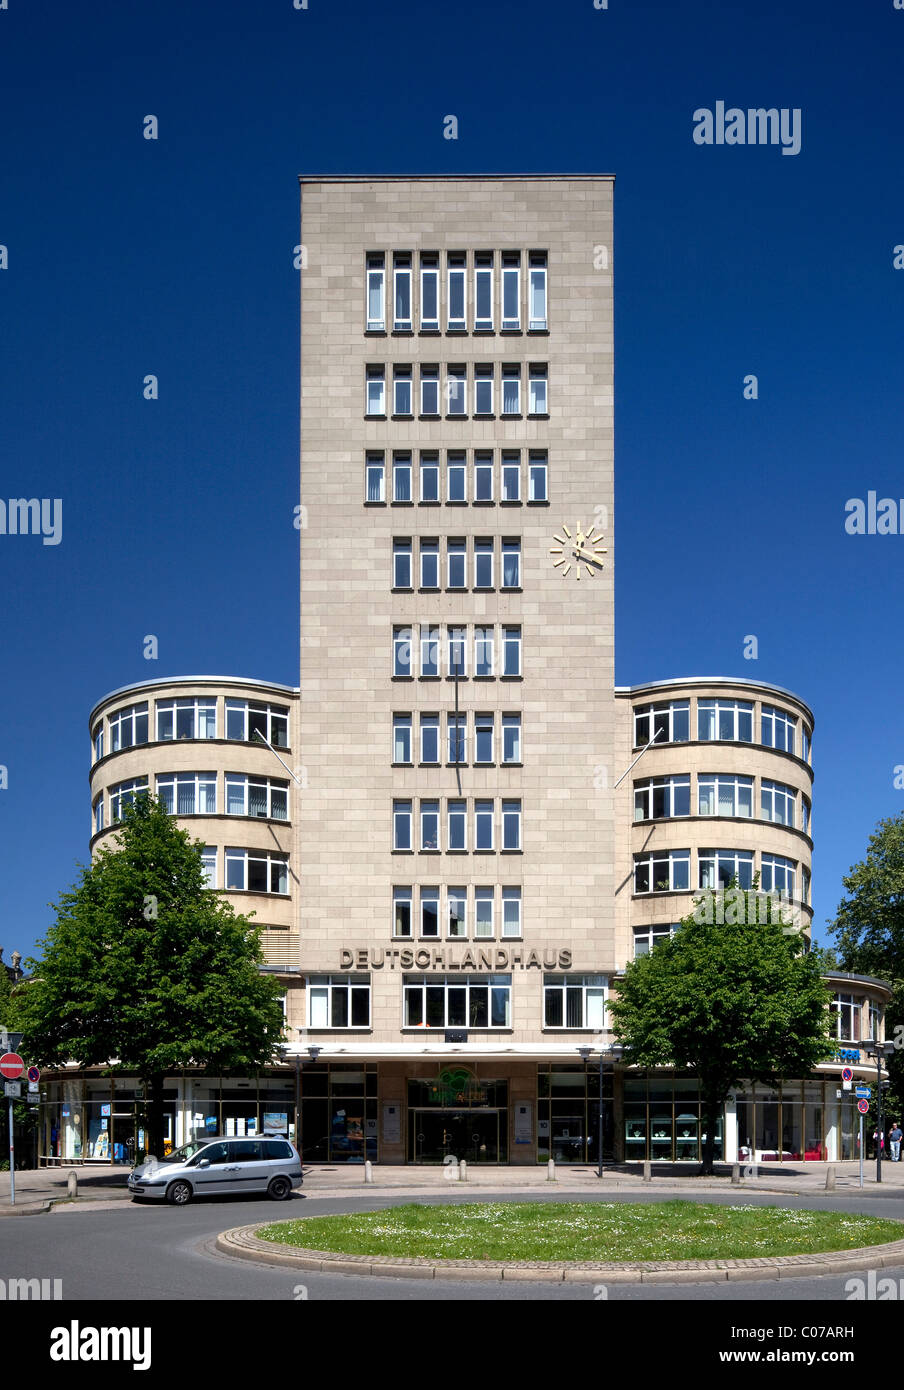 Deutschlandhaus bâtiment administratif, Essen, région de la Ruhr, en Rhénanie du Nord-Westphalie, Allemagne, Europe Banque D'Images